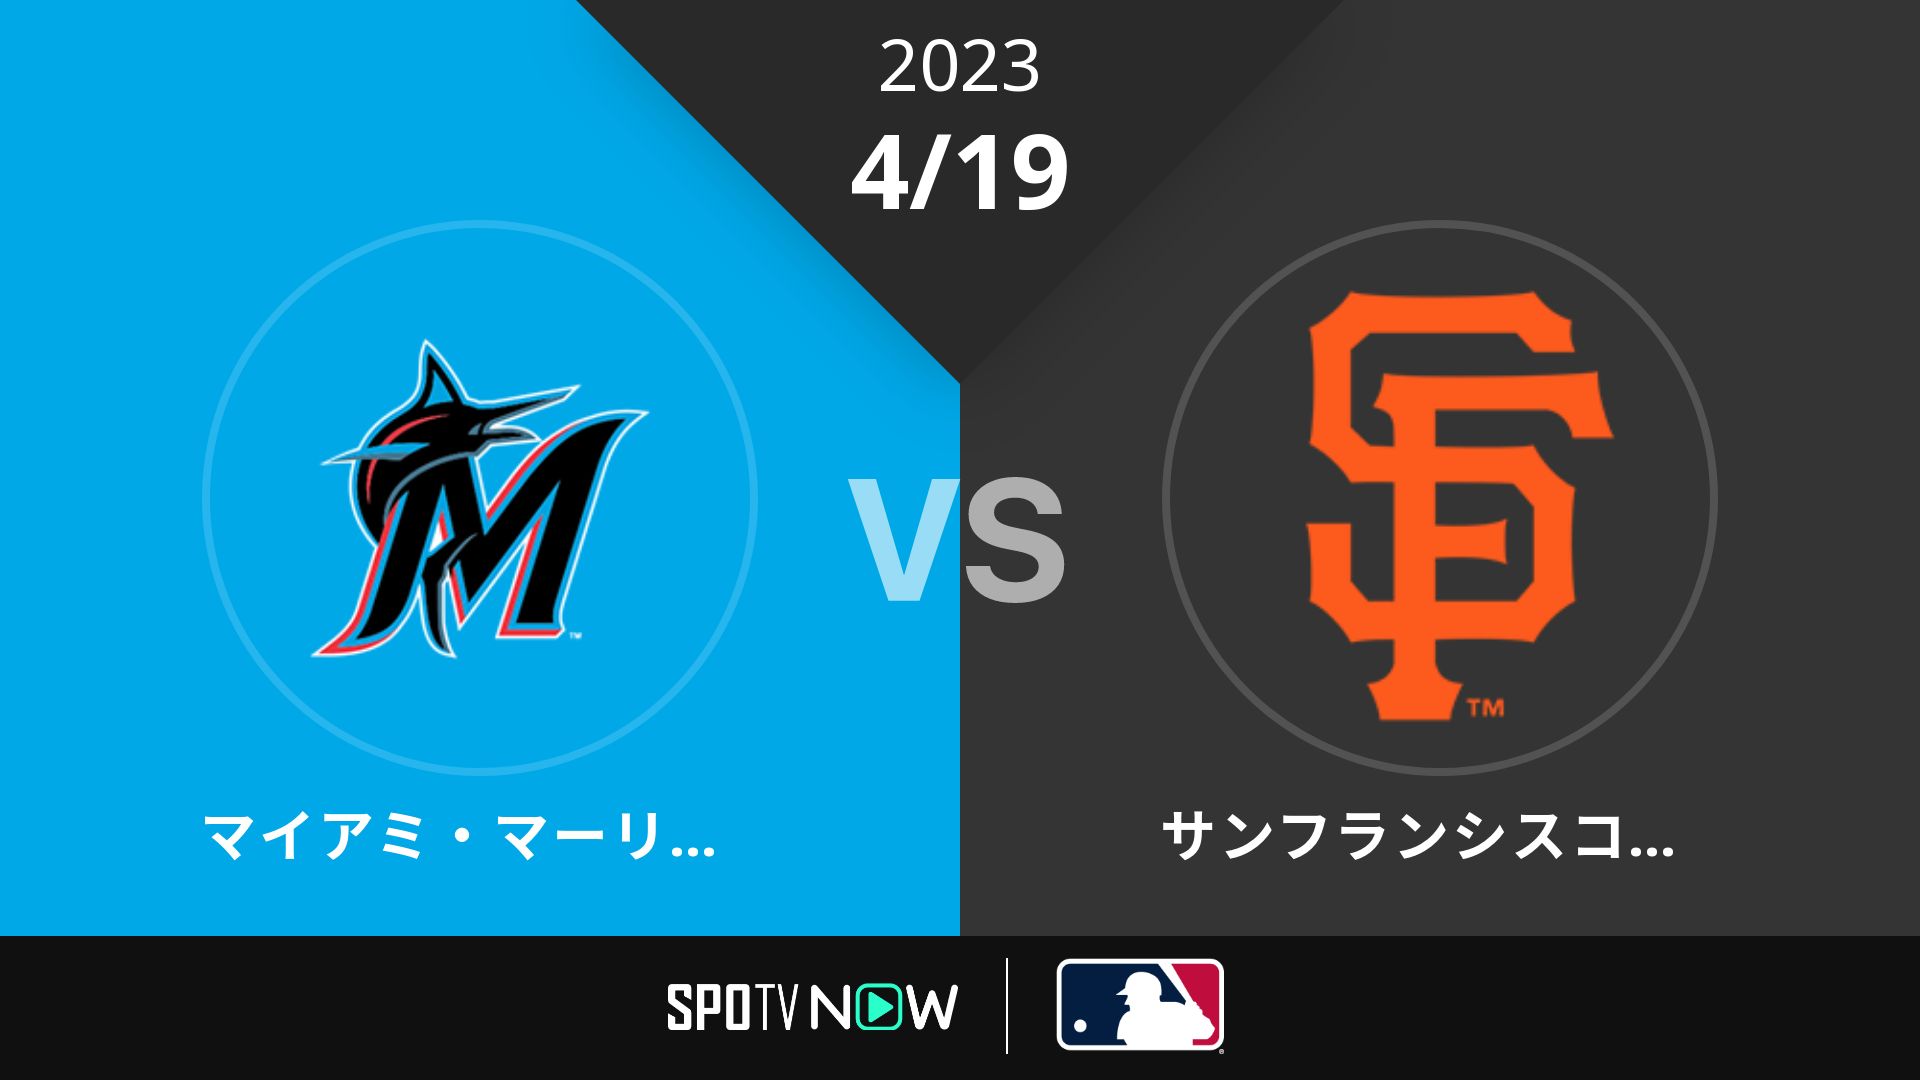 2023/4/19 マーリンズ vs ジャイアンツ [MLB]